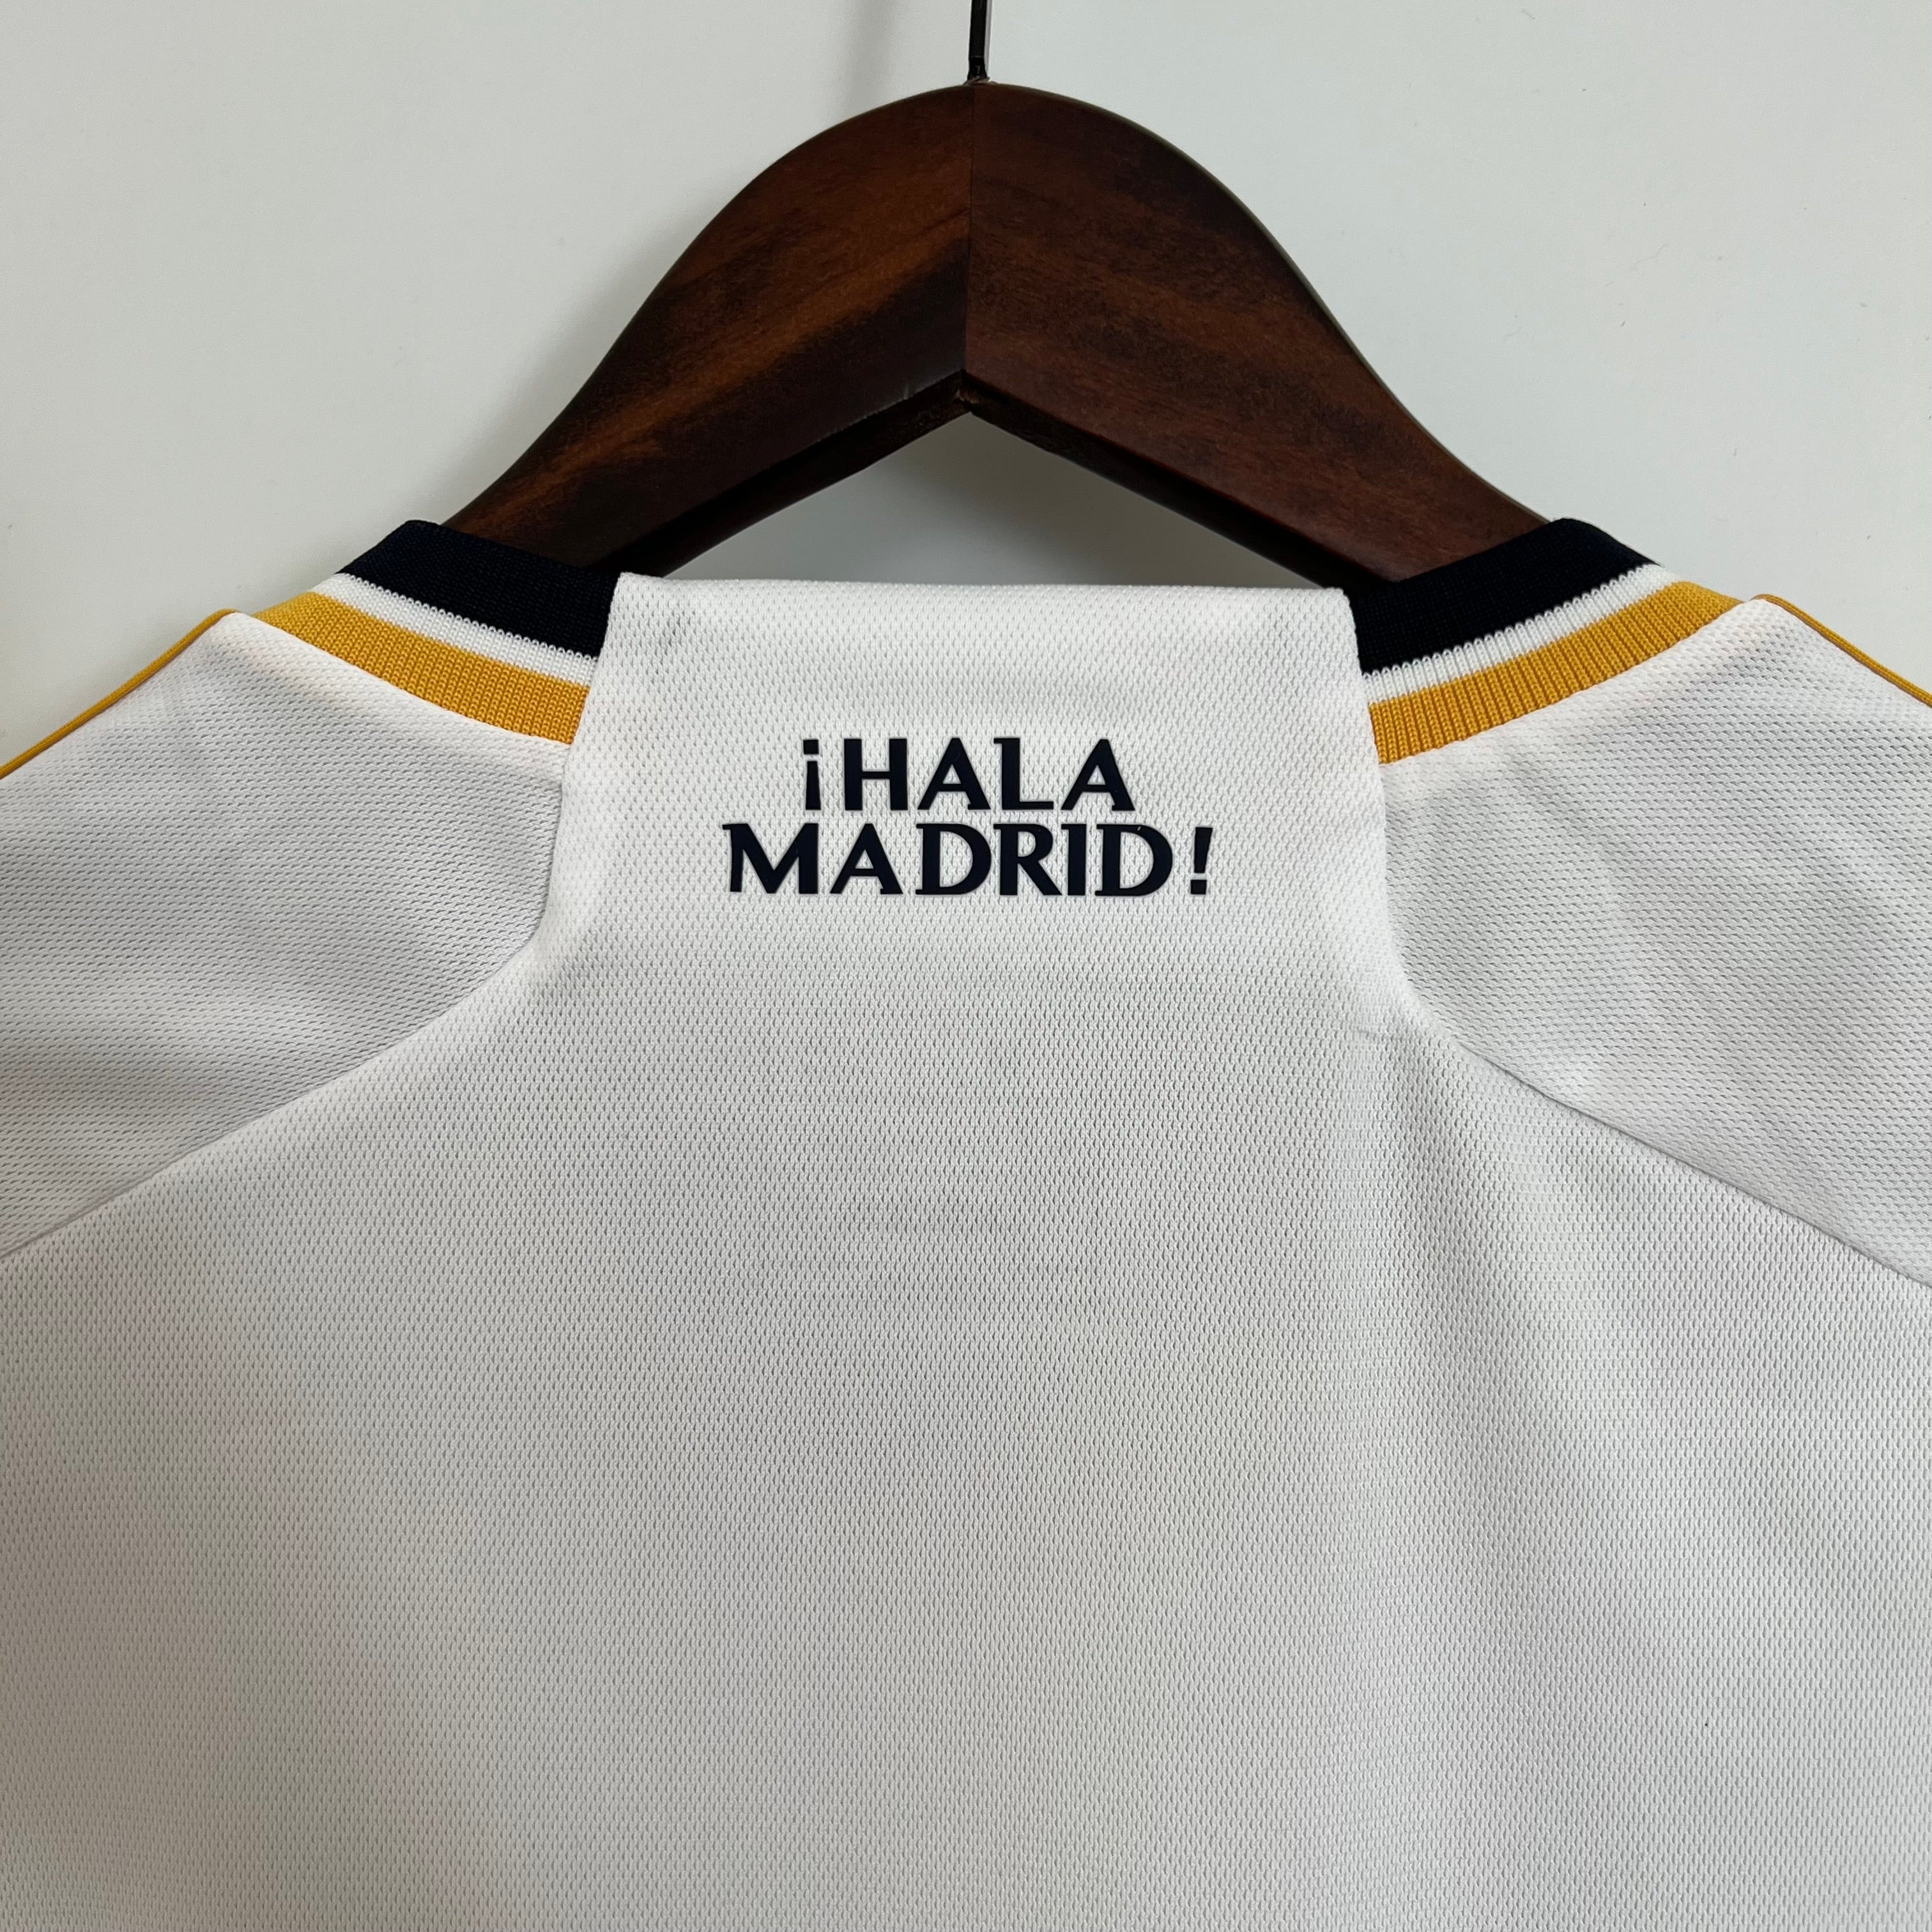 22/23 Real Madrid Home Kit – BATFAMILYSHOP